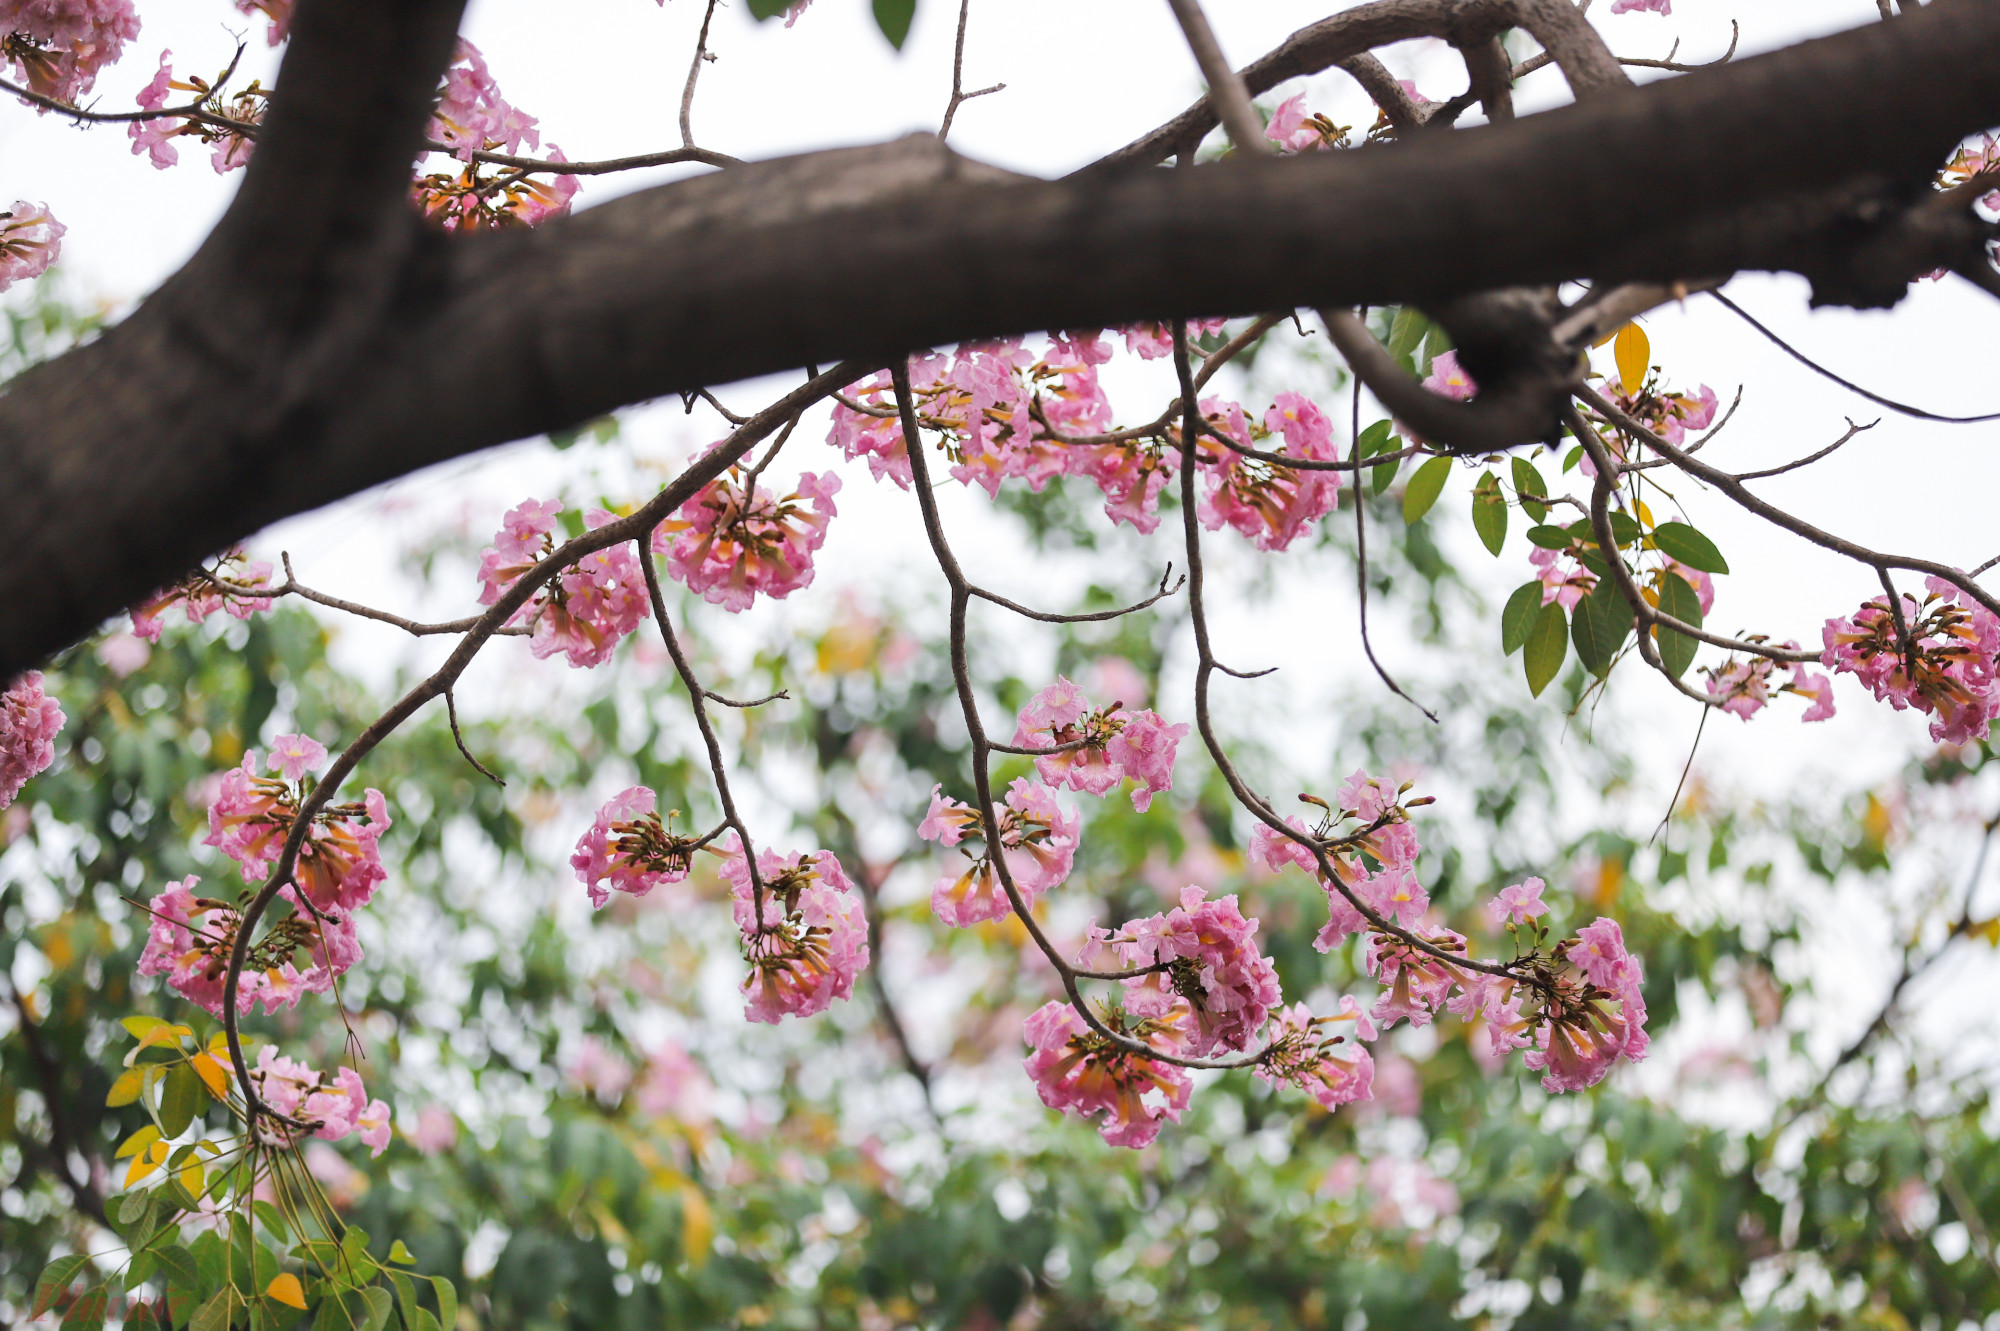 Cây kèn hồng là cây thân gỗ, thường được trồng nhiều ở các đô thị